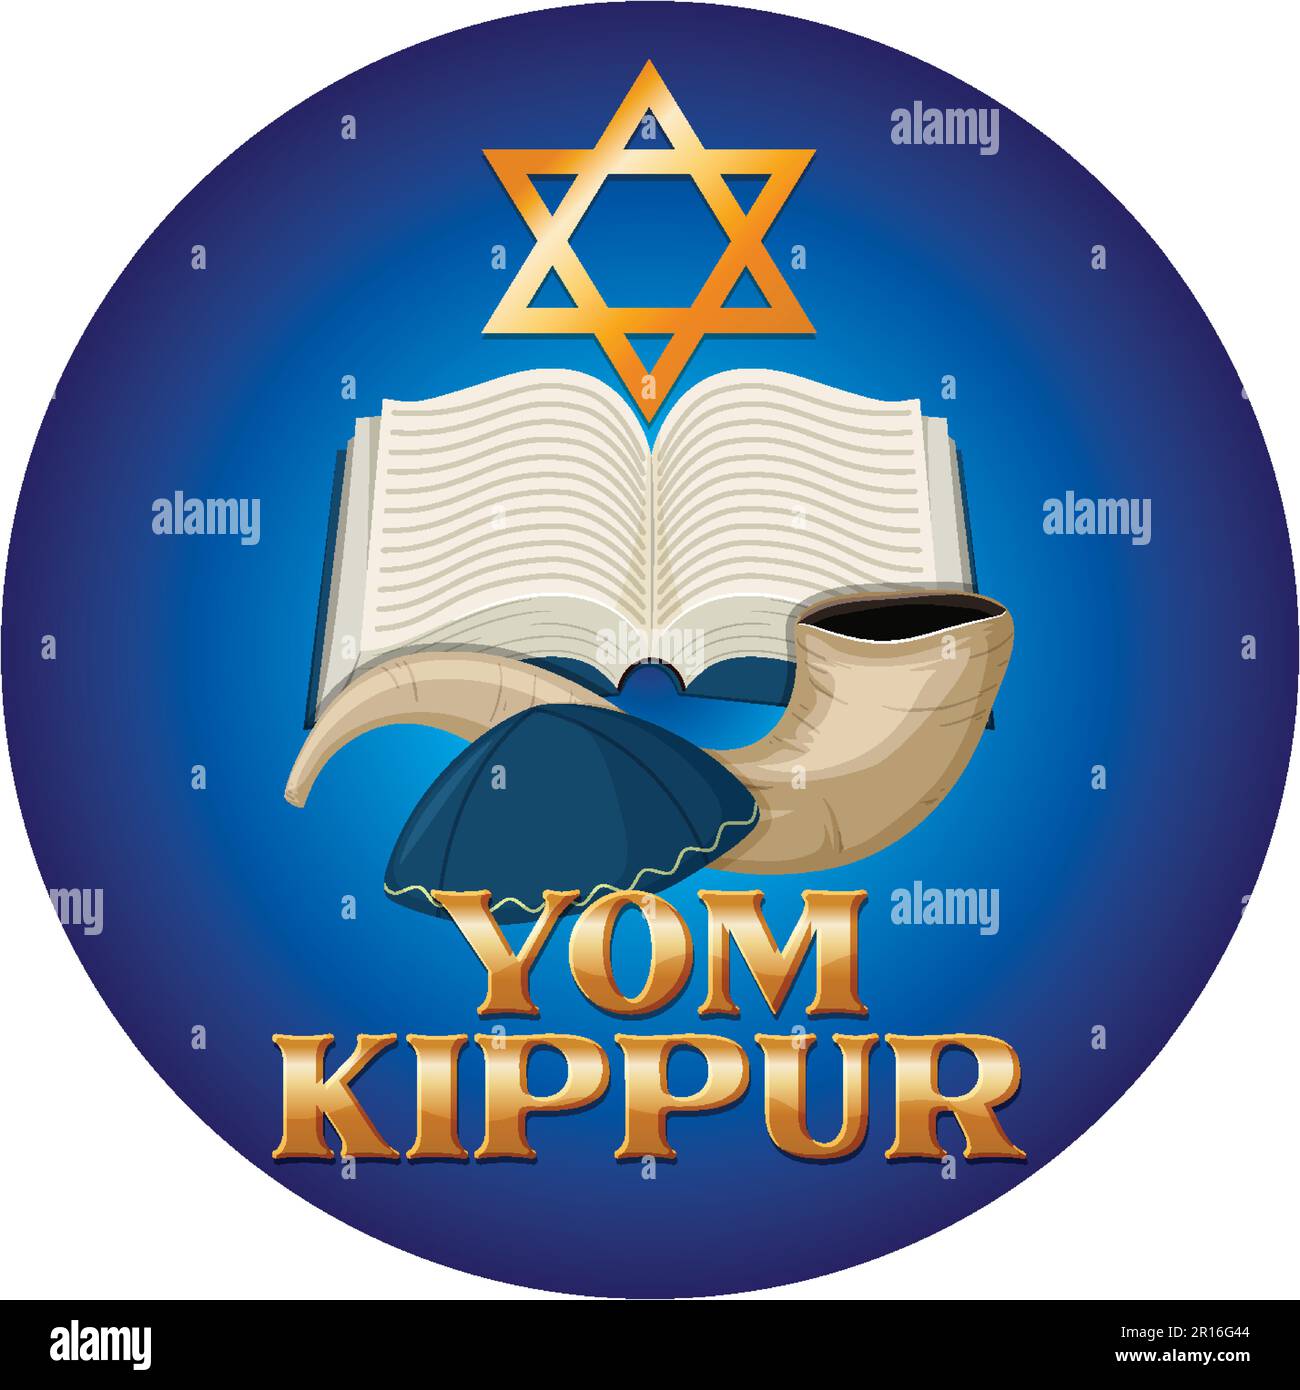 Yom Kippur Jewish day illustration Stock Vector